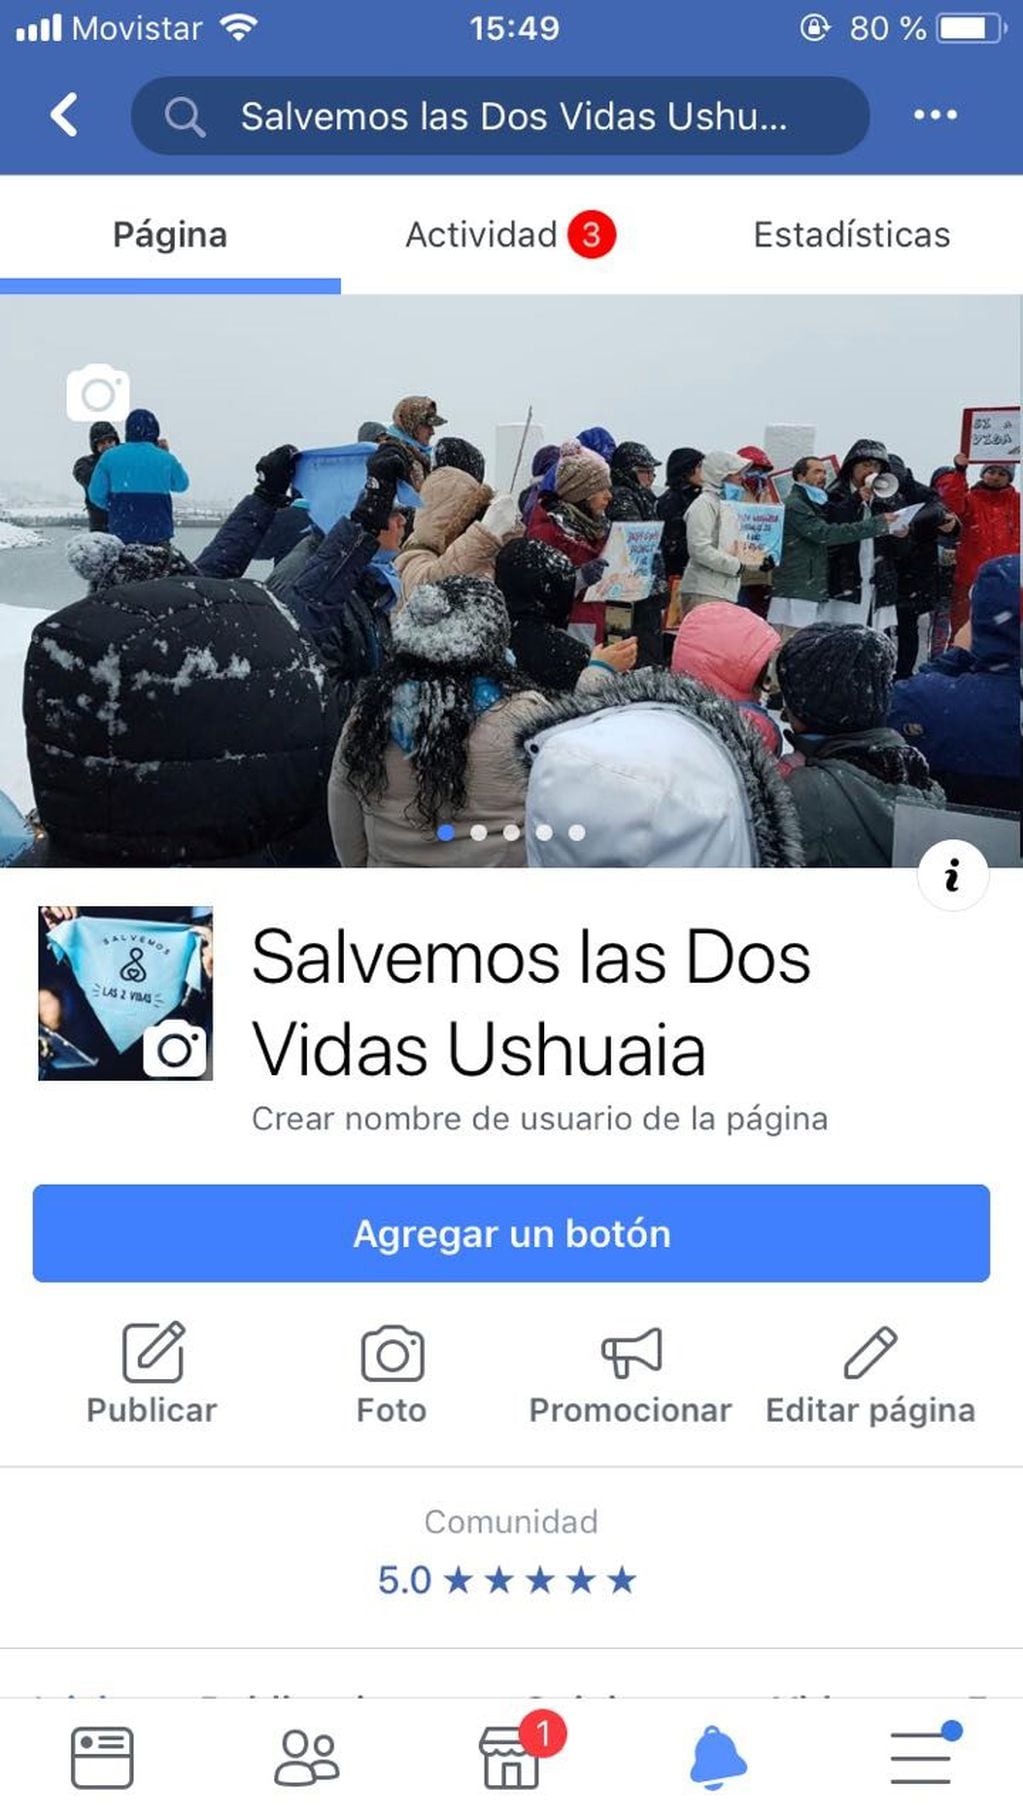 La página de facebook: Salvemos las Dos Vidas Ushuaia, para aquellos que quieran sumarse.